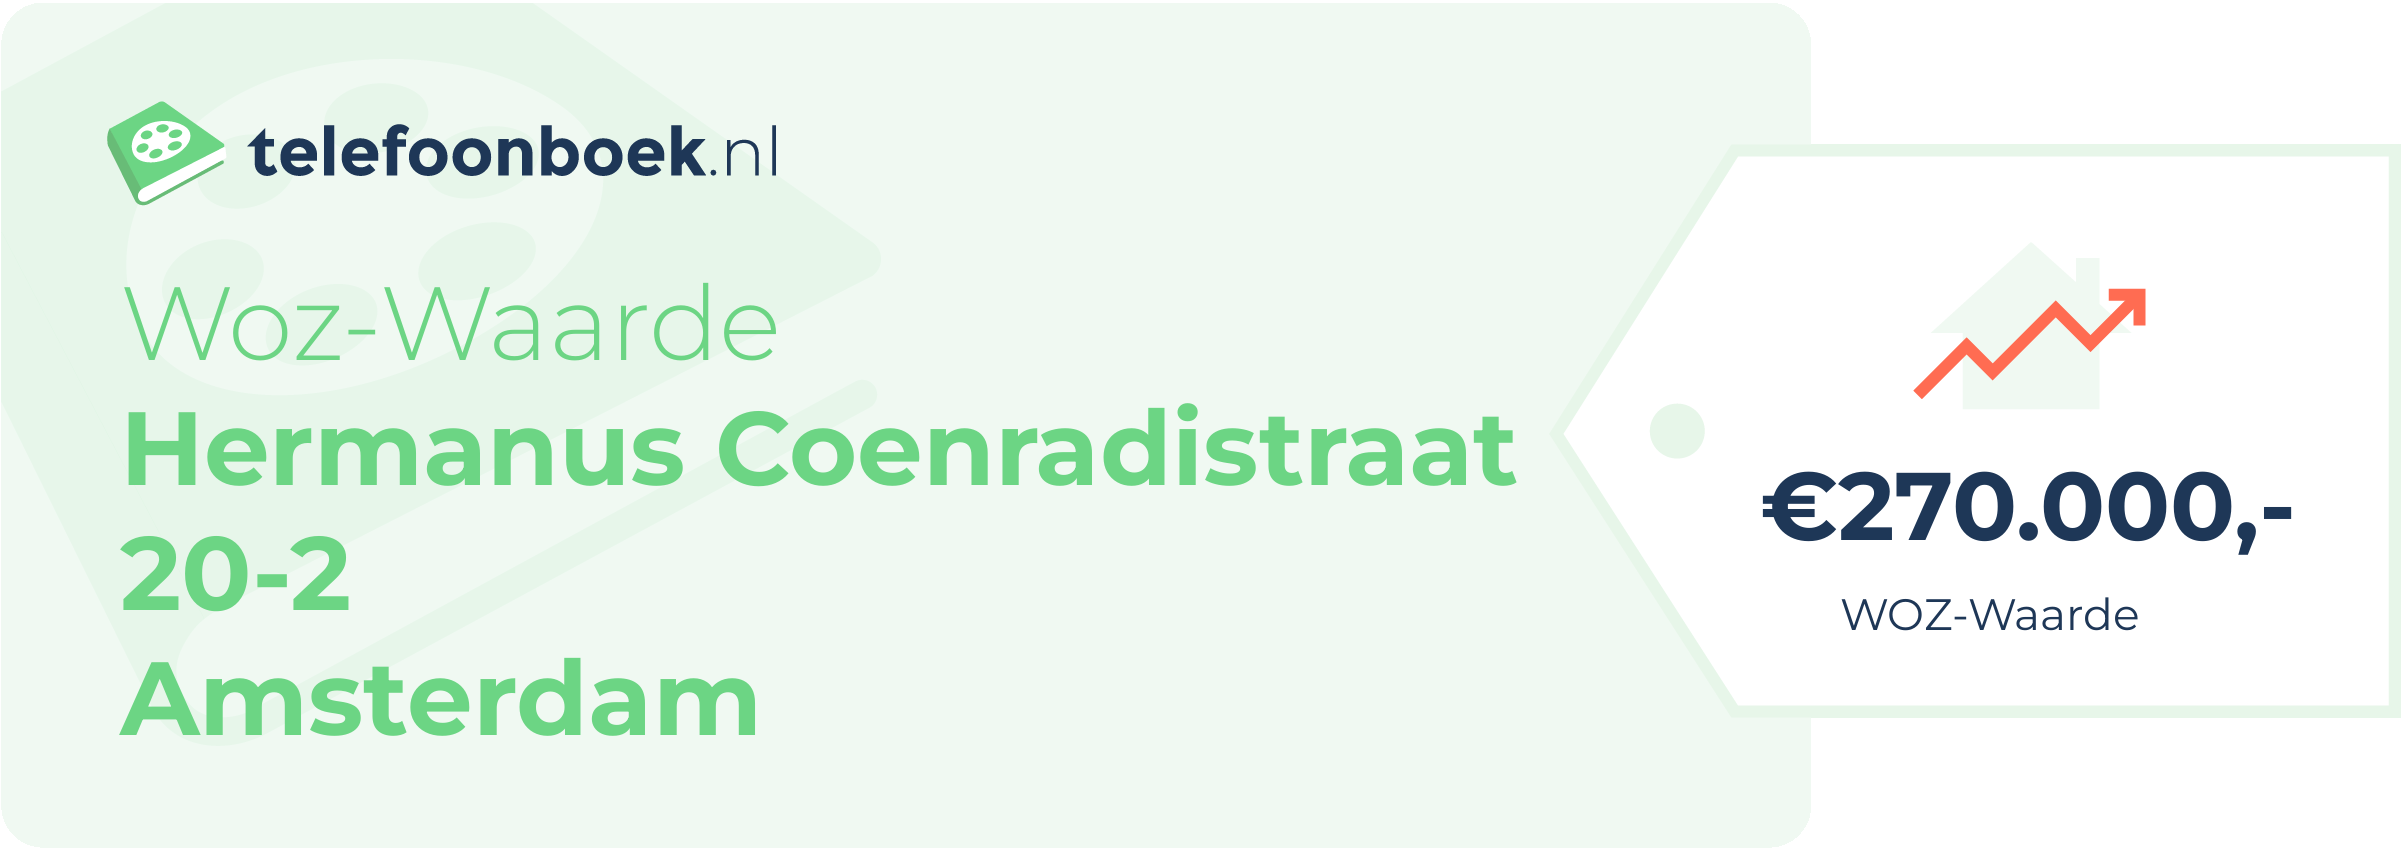 WOZ-waarde Hermanus Coenradistraat 20-2 Amsterdam